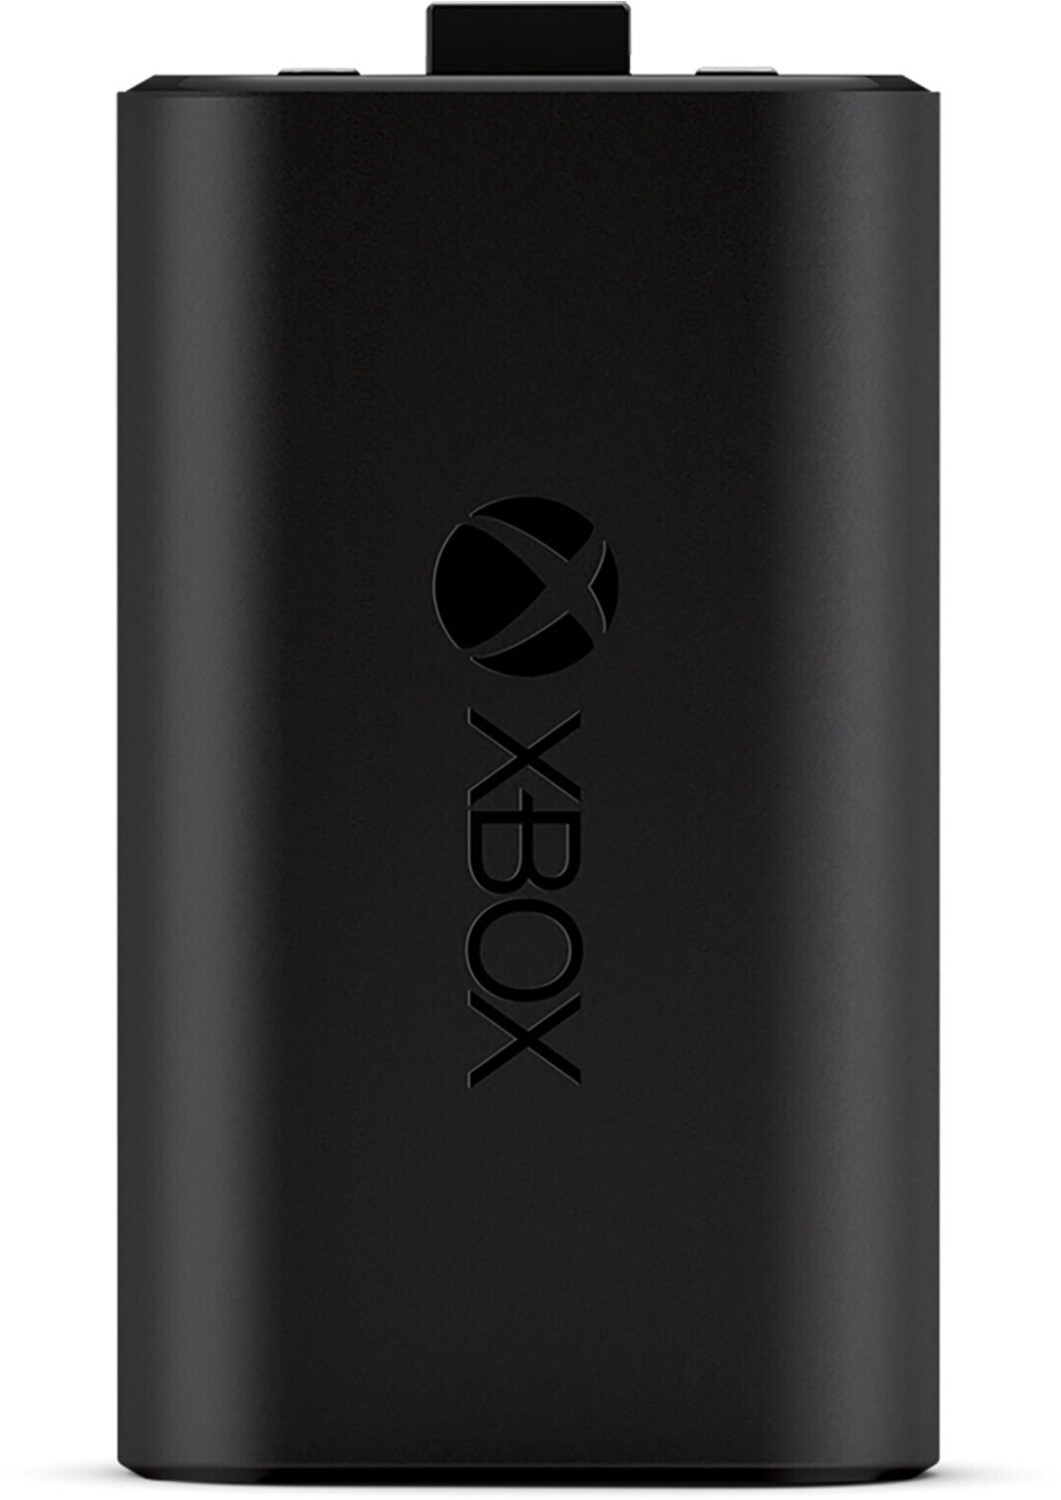 Microsoft Batterie rechargeable pour manette Xbox + câble USB-C : meilleur  prix et actualités - Les Numériques